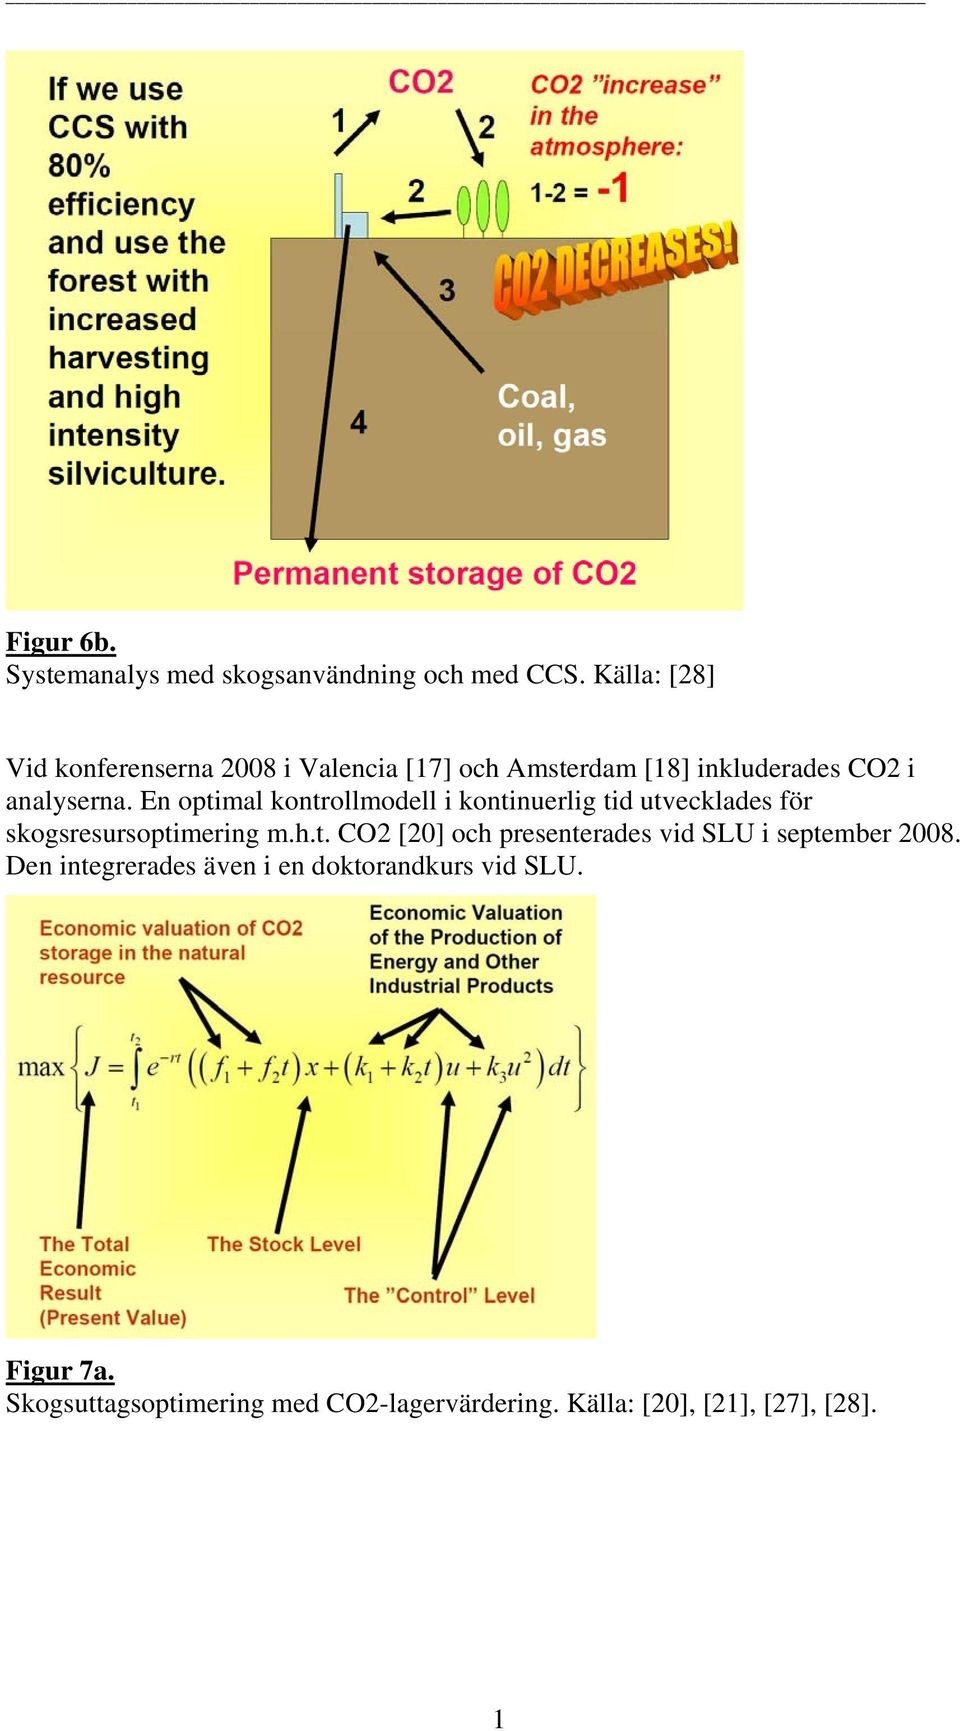 En optimal kontrollmodell i kontinuerlig tid utvecklades för skogsresursoptimering m.h.t. CO2 [20] och presenterades vid SLU i september 2008.